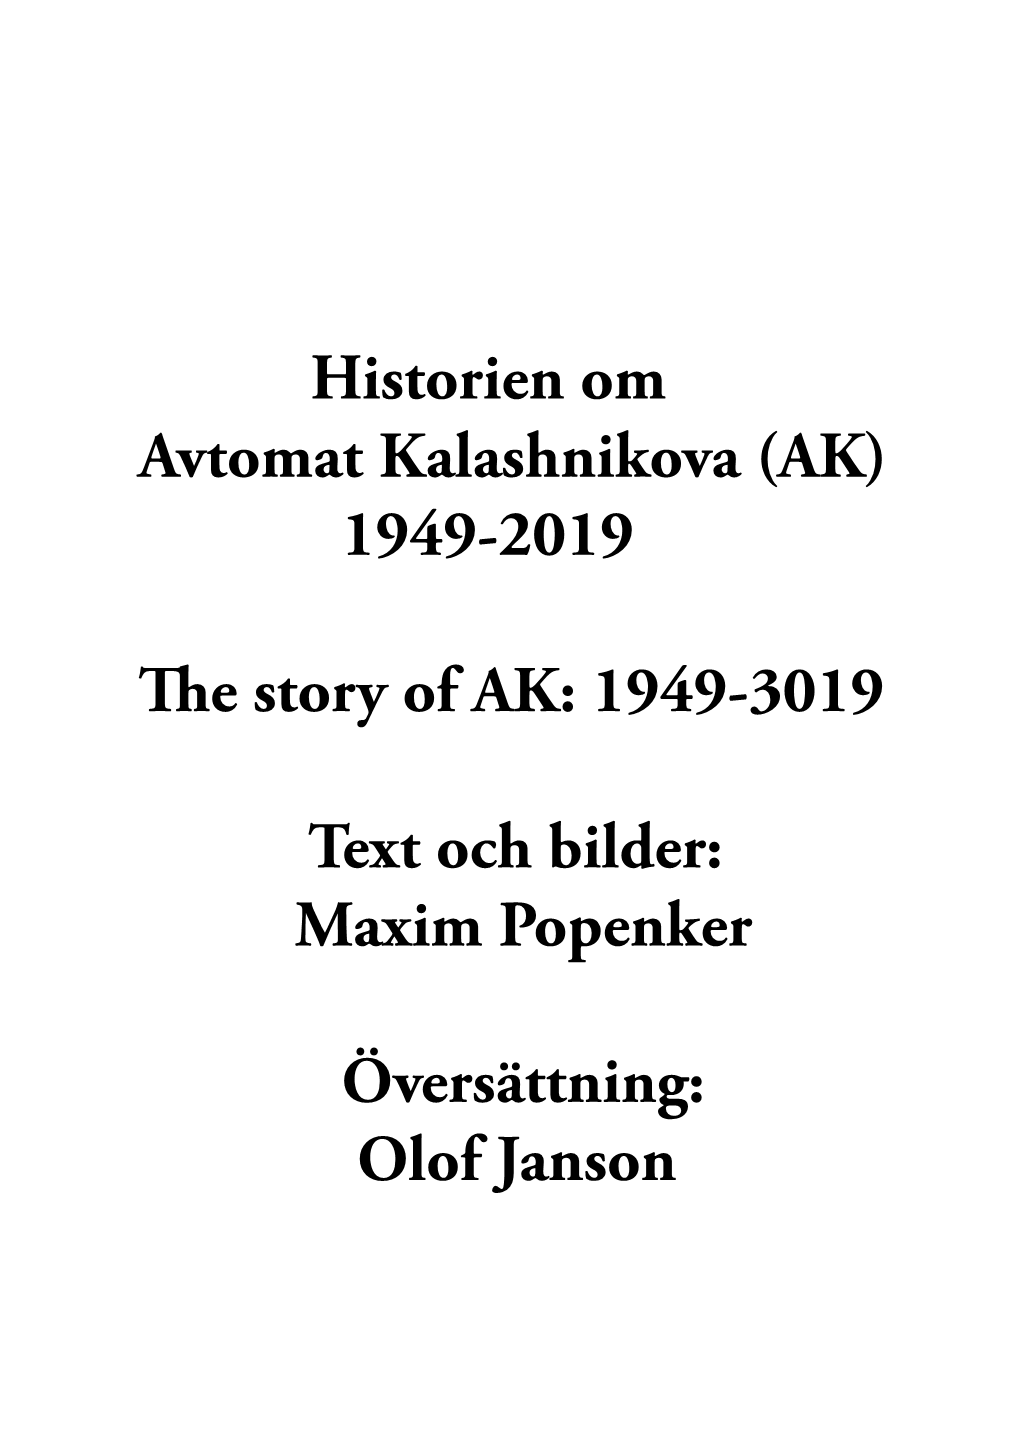 (AK) 1949-2019 E Story of AK